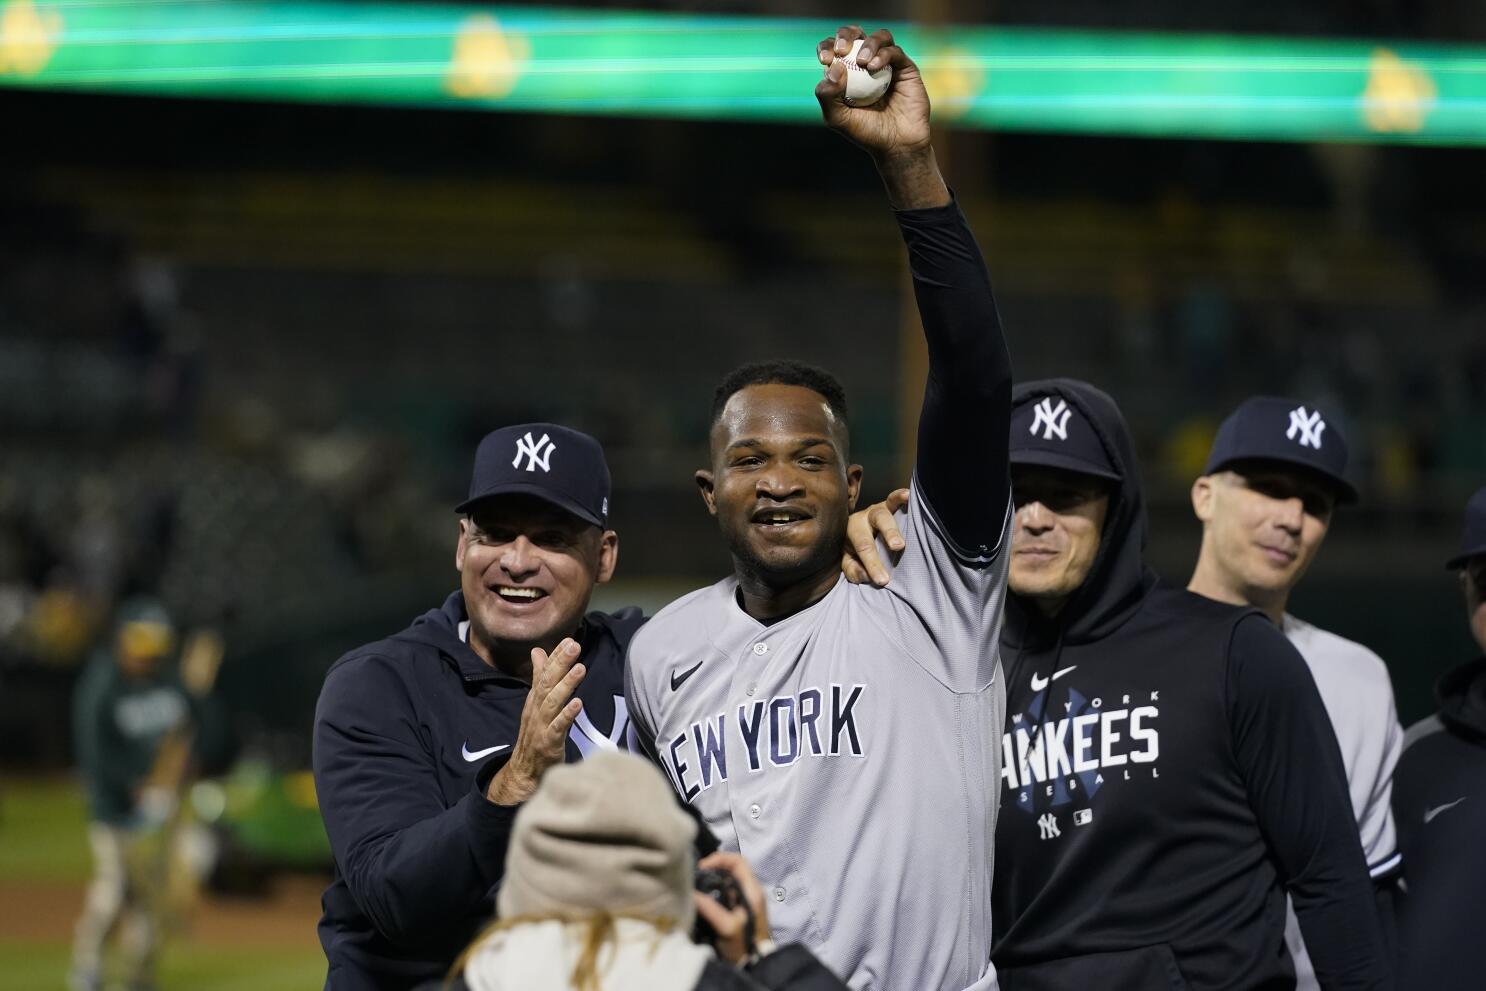 Ian Hamilton returns to Yankees' stacked bullpen